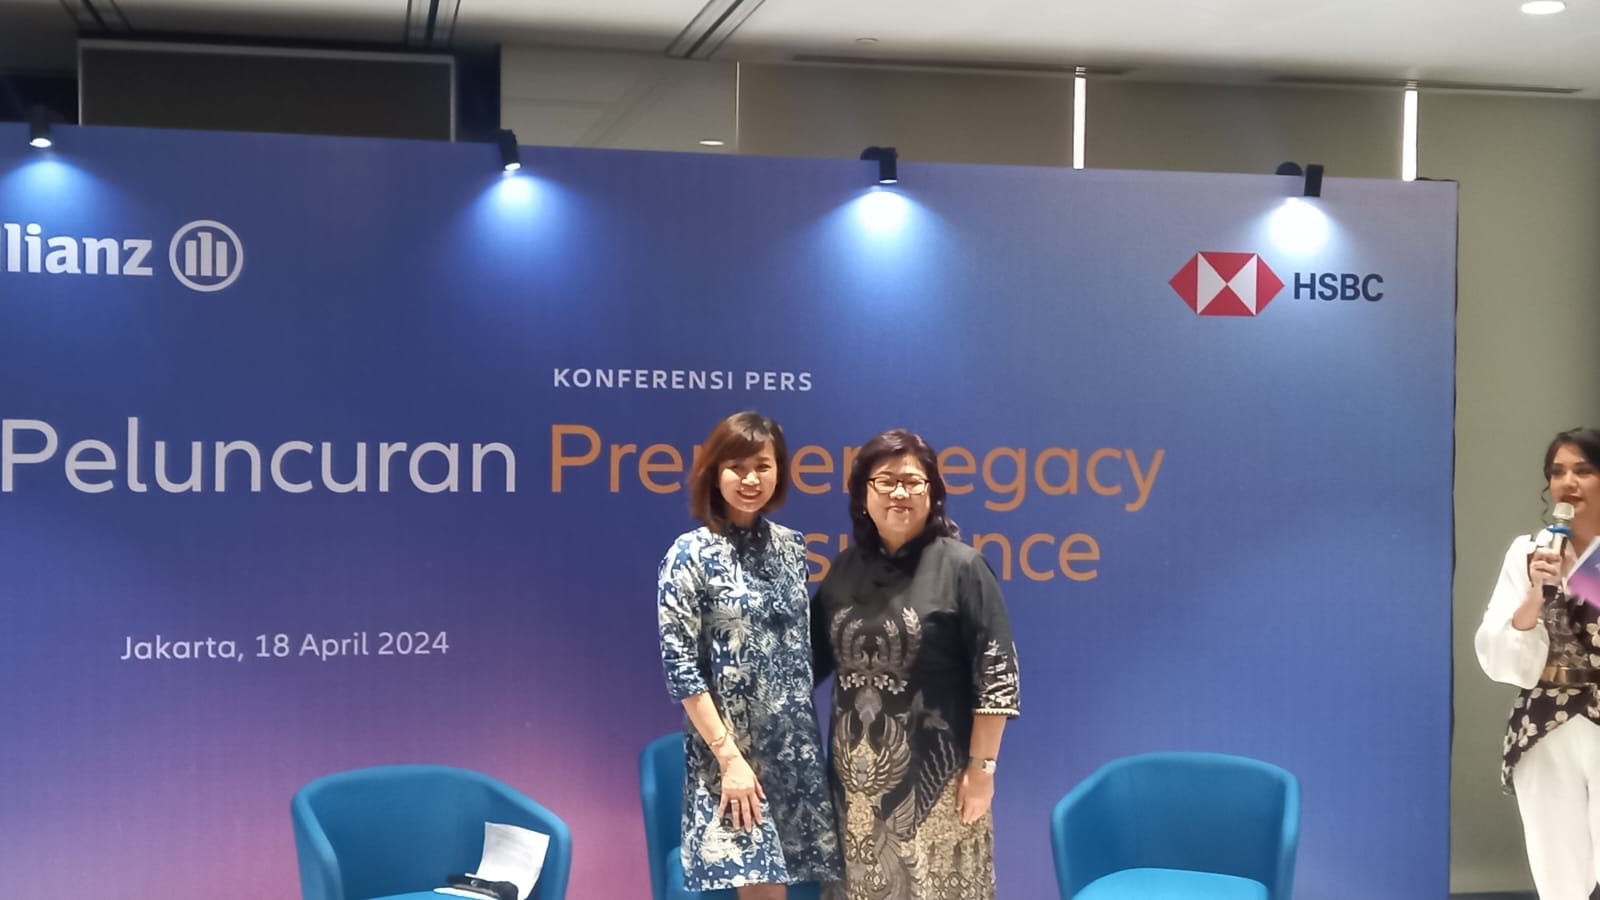 Peluncuran Premier Legacy Assurance, produk asuransi warisan besutan PT Bank HSBC Indonesia dan PT Asuransi Allianz Life Indonesia, Kamis, 18 April 2024.